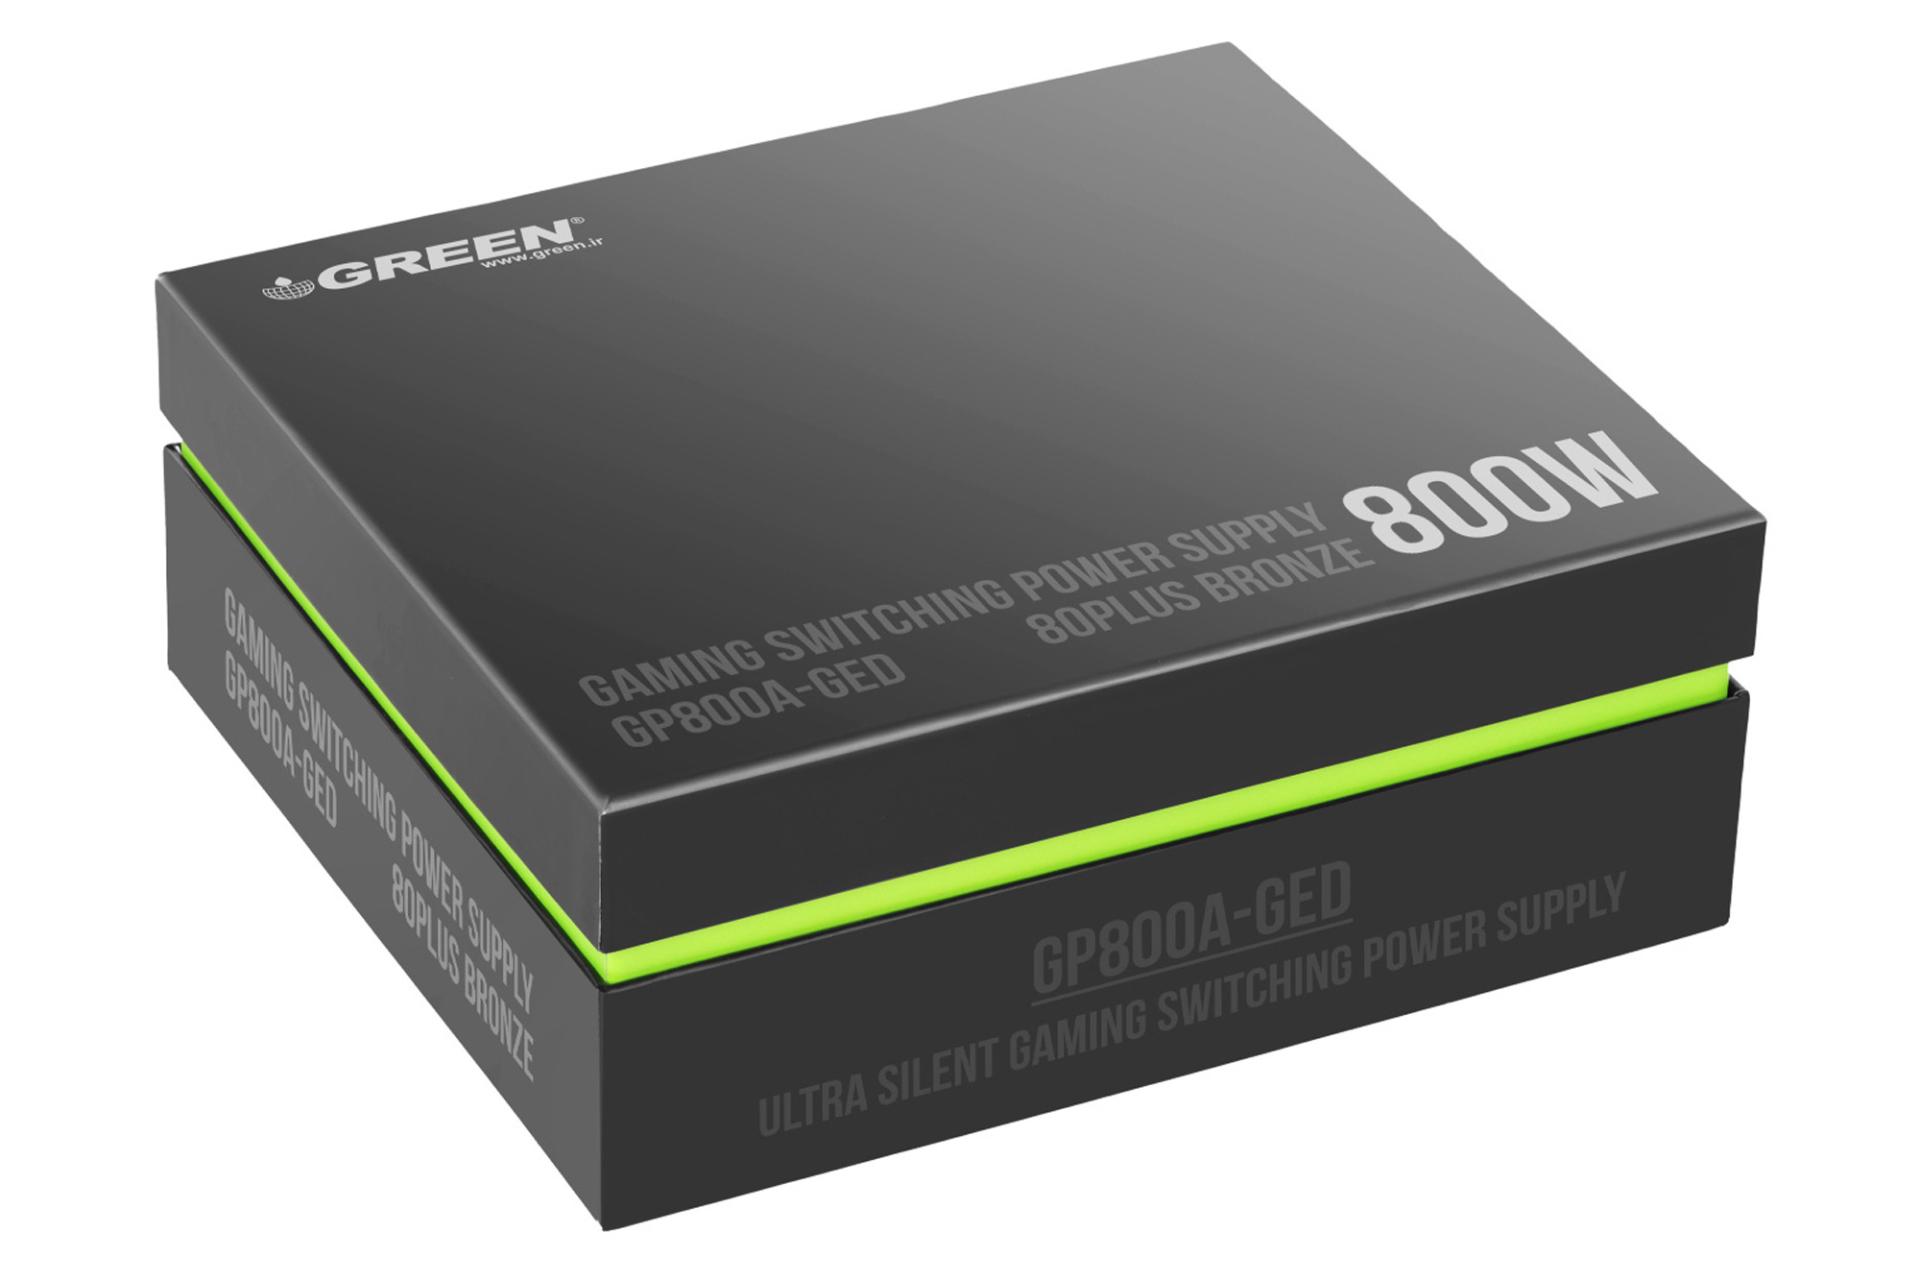 جعبه پاور کامپیوتر گرین GREEN GP800A-GED با توان 800 وات